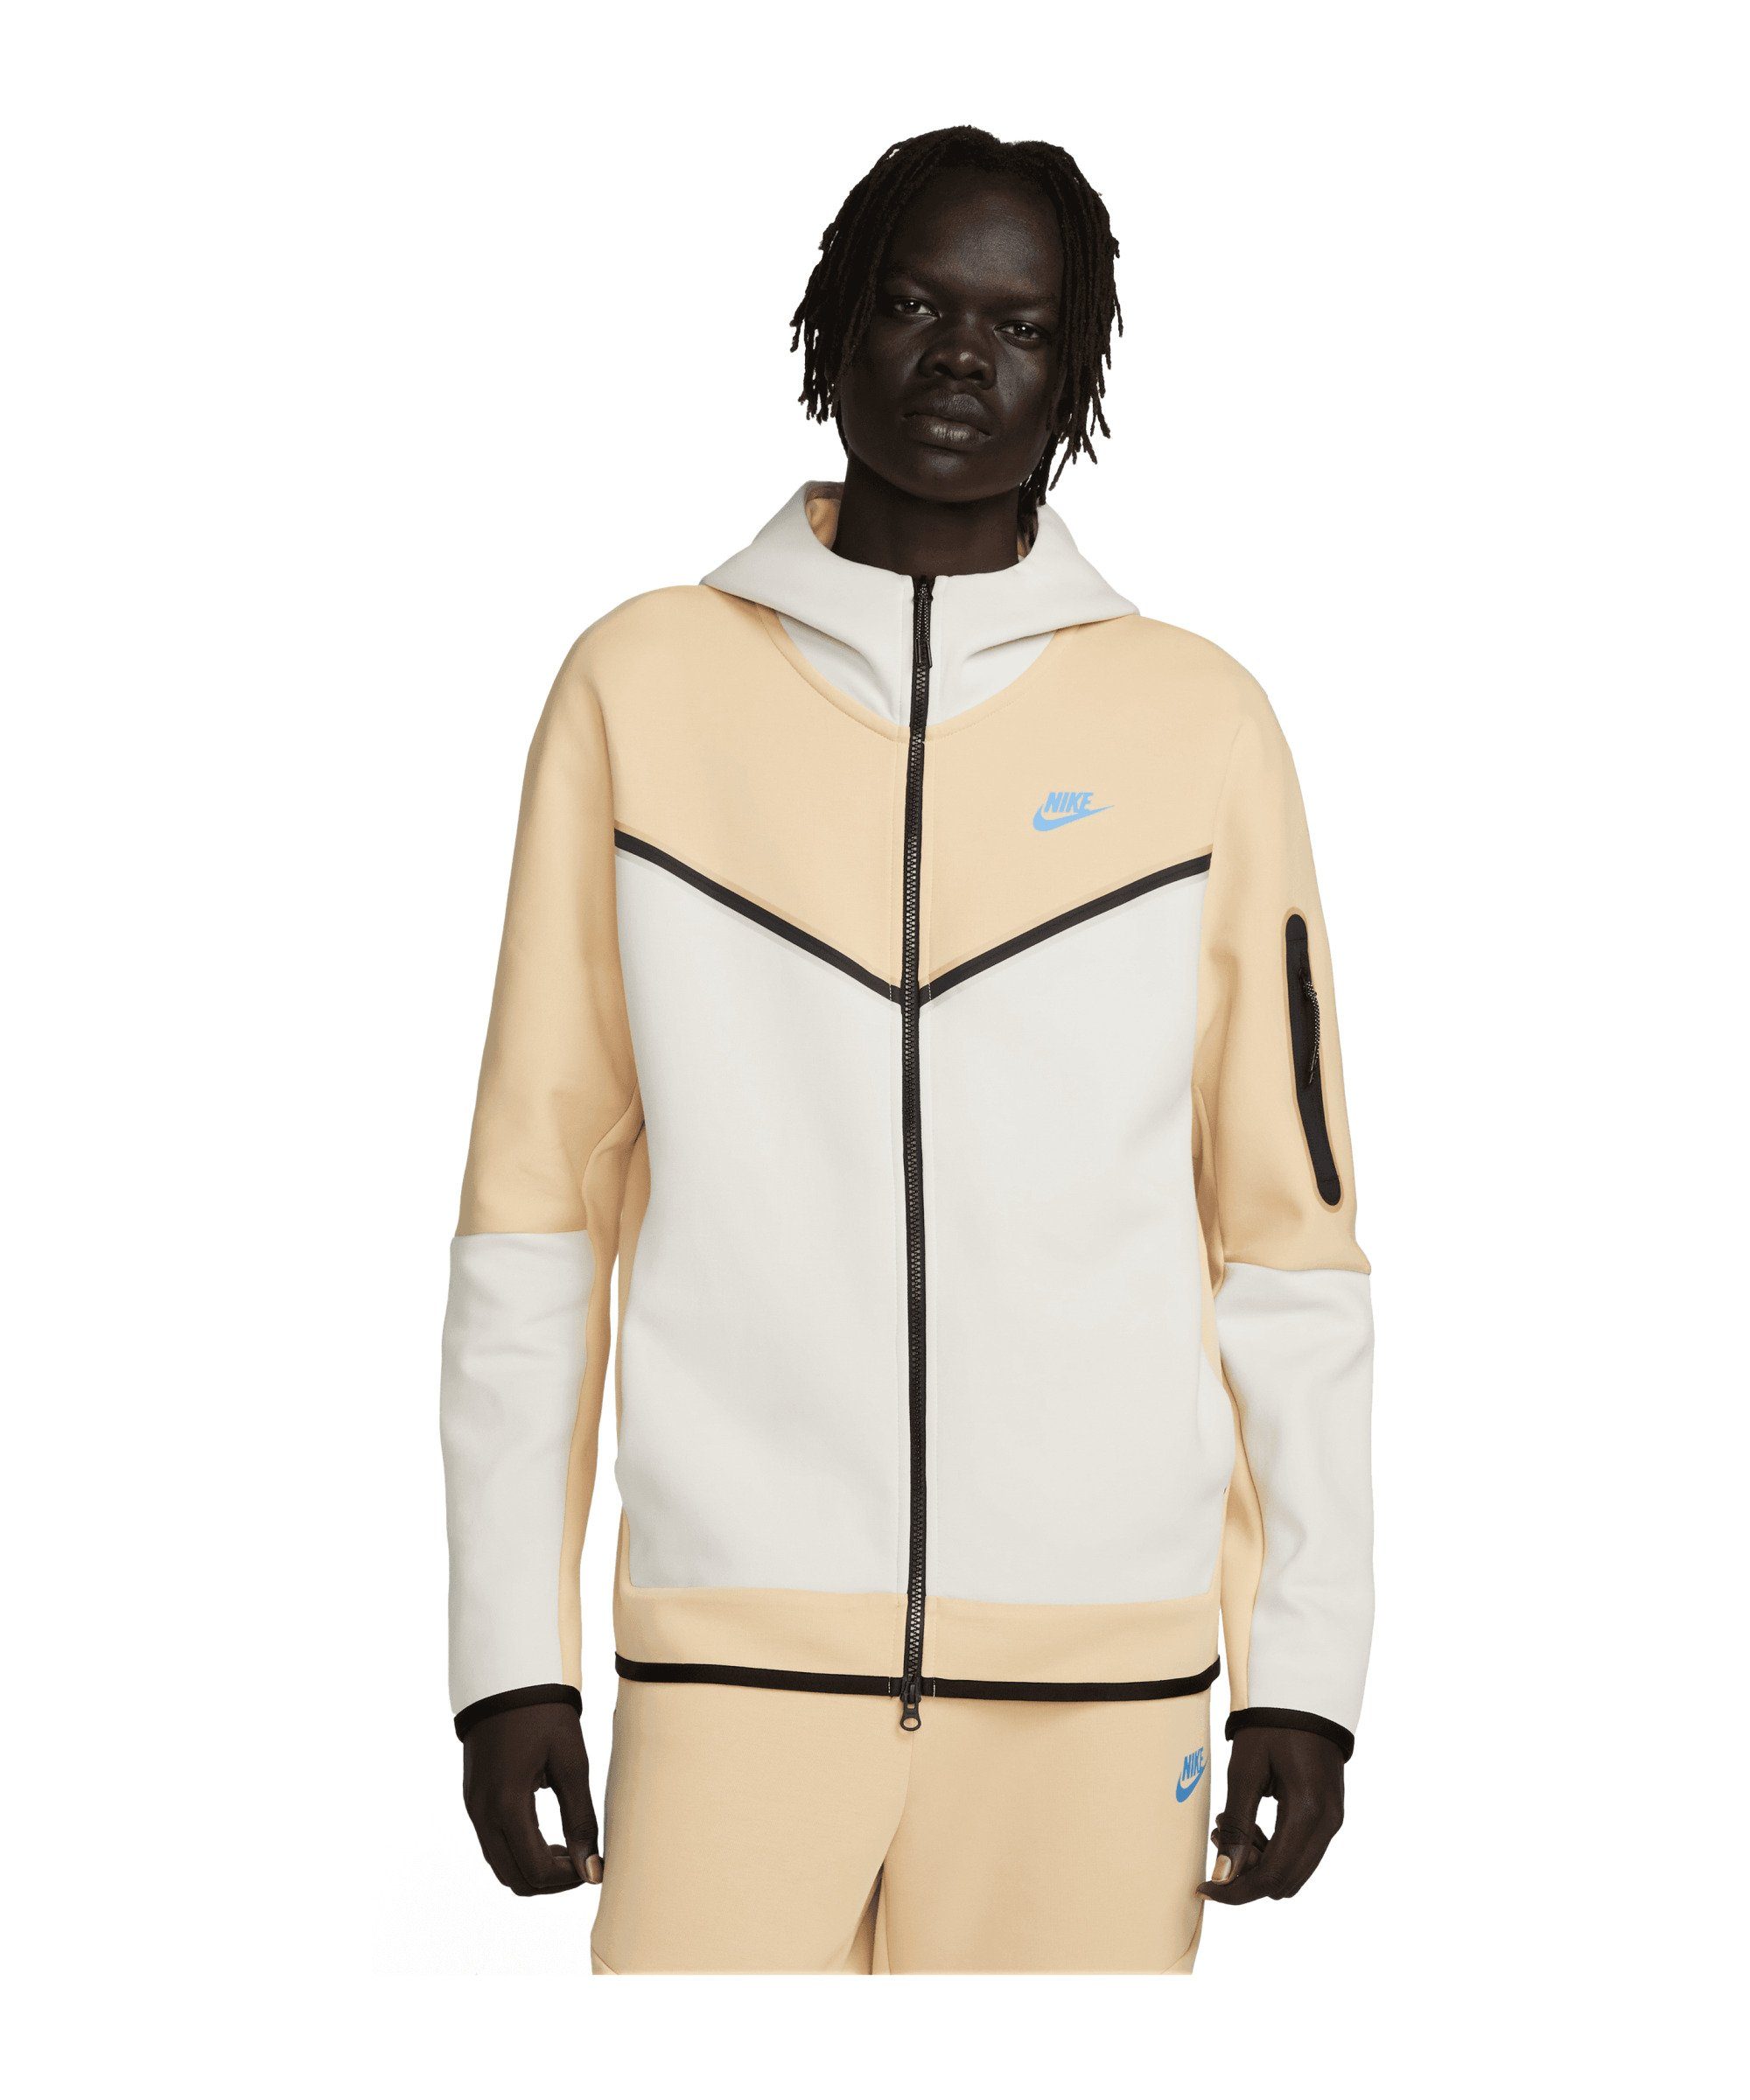 Nike Sportswear Sweatjacke Tech Fleece Kapuzenjacke braunblau